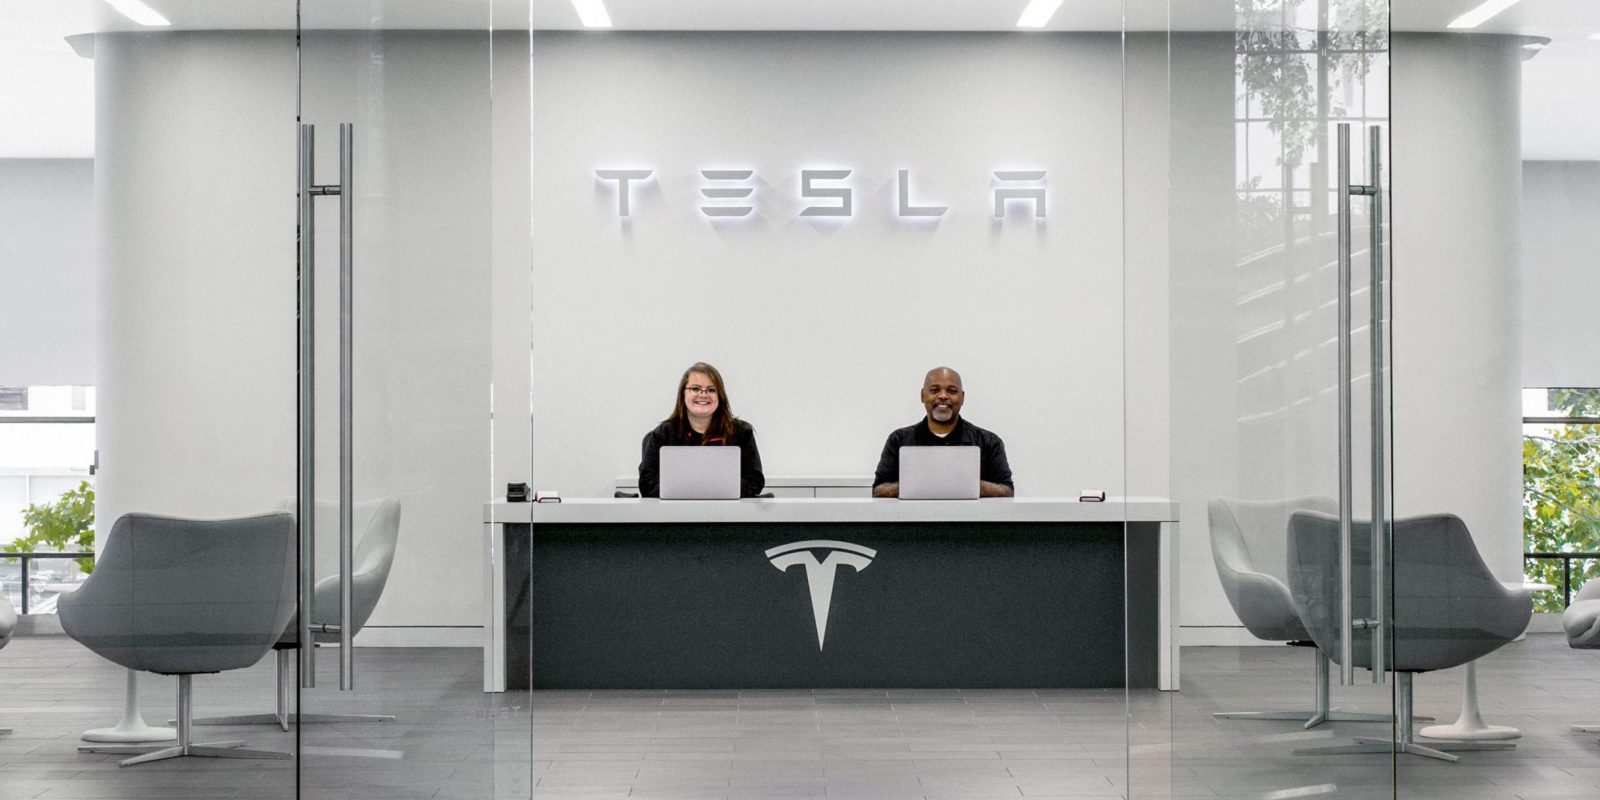 Tesla employee ratings